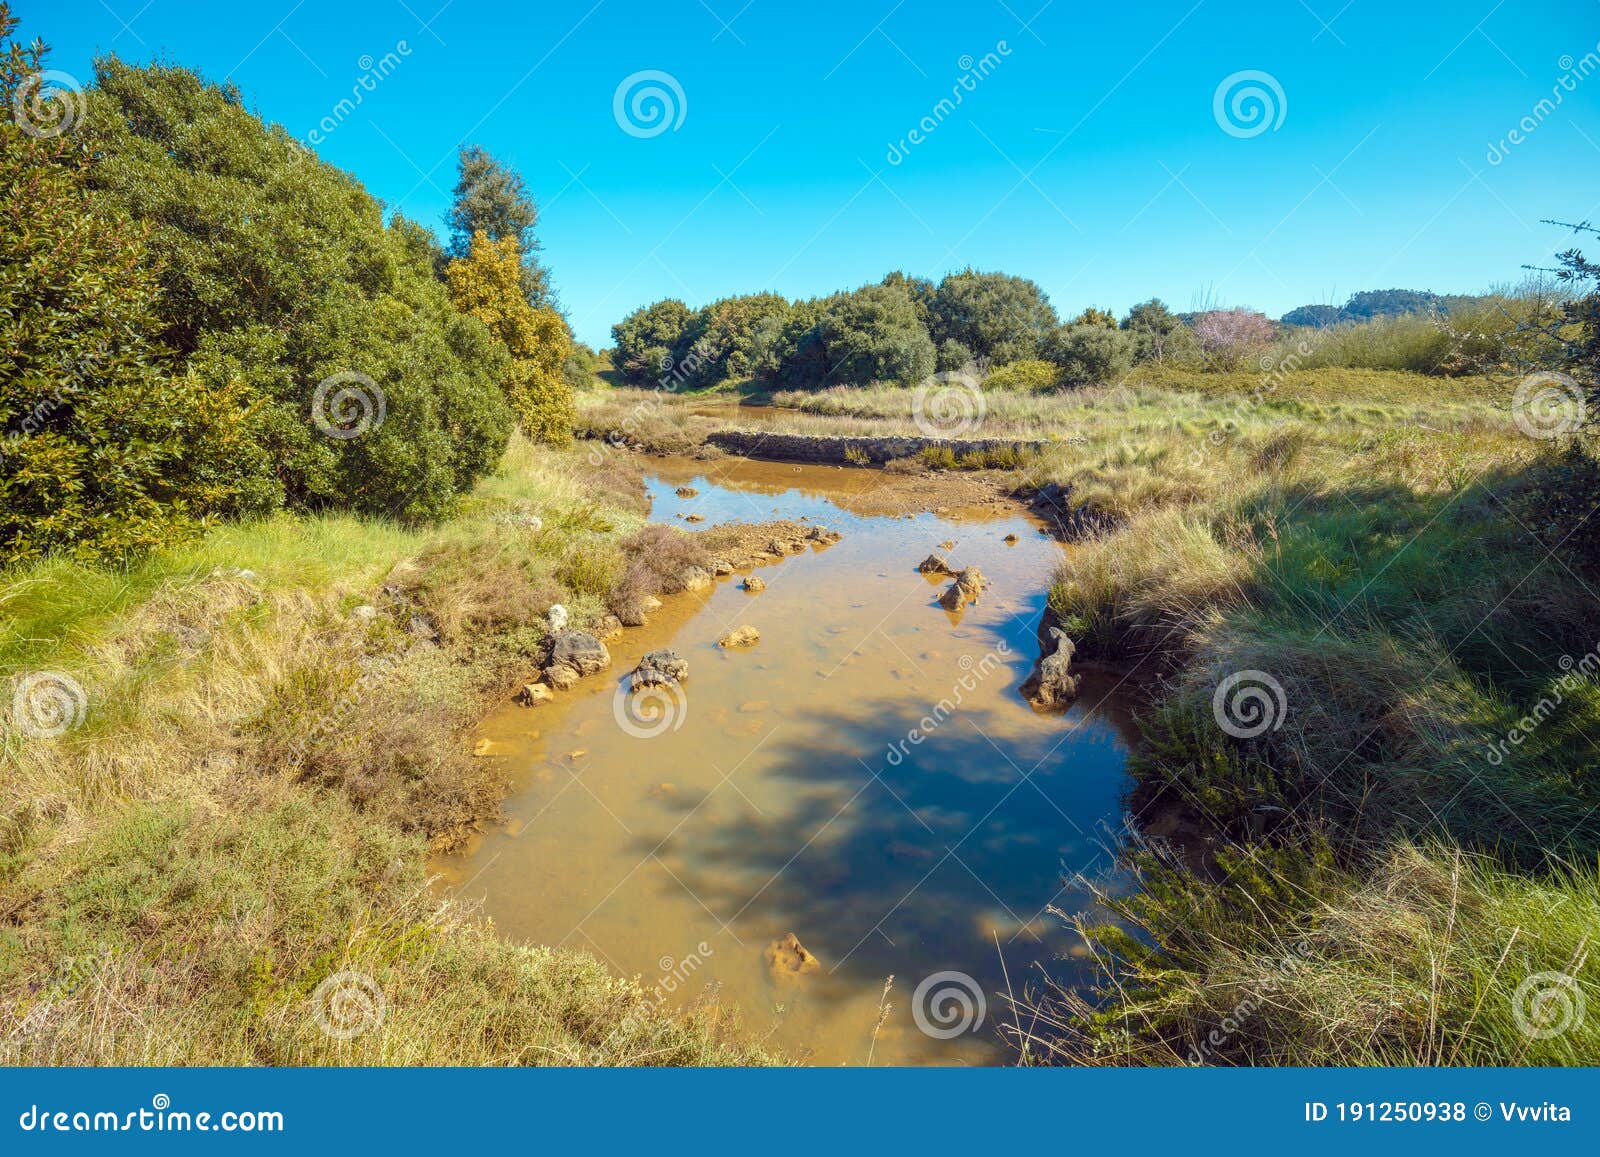 Nogle gange nogle gange Hejse Majestætisk Natural Reserve Natural Resources Marisma De Joyel. Cantabria, Spain,  Europe Stock Photo - Image of pond, autumn: 191250938